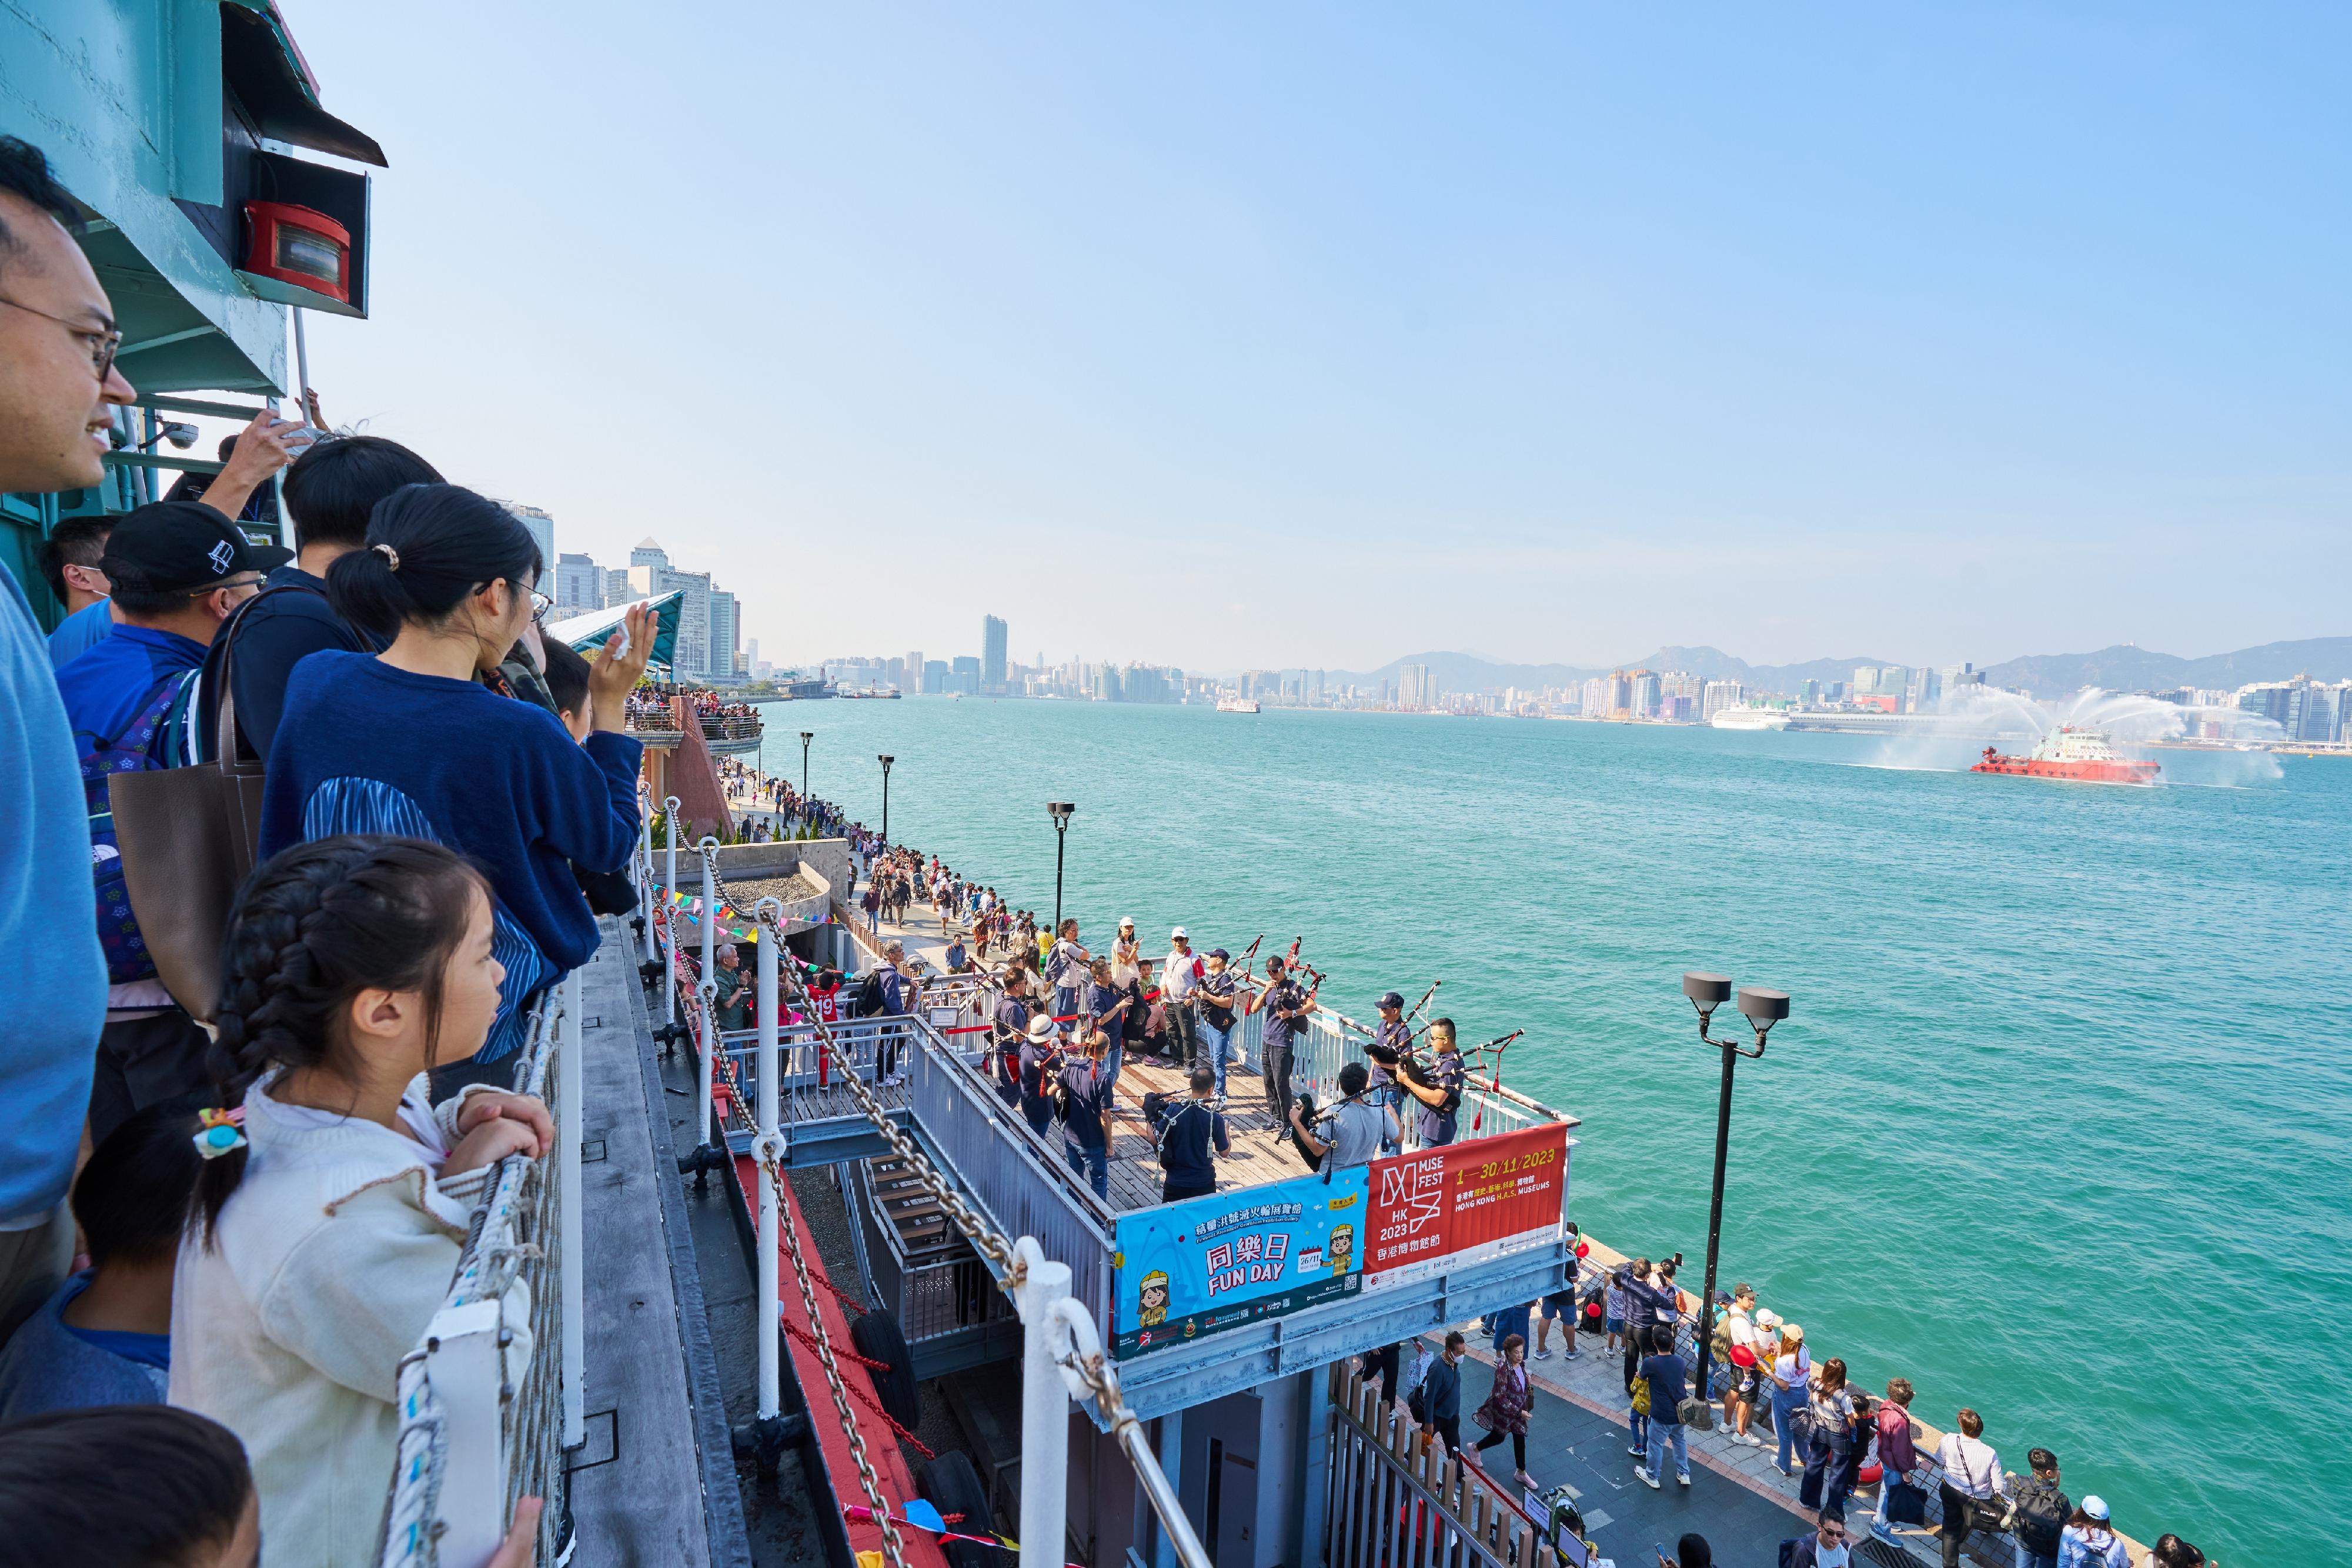 康乐及文化事务署十一月期间举办的「香港博物馆节2023」圆满结束。图示葛量洪号灭火轮展览馆同乐日，大人小孩乐在其中。